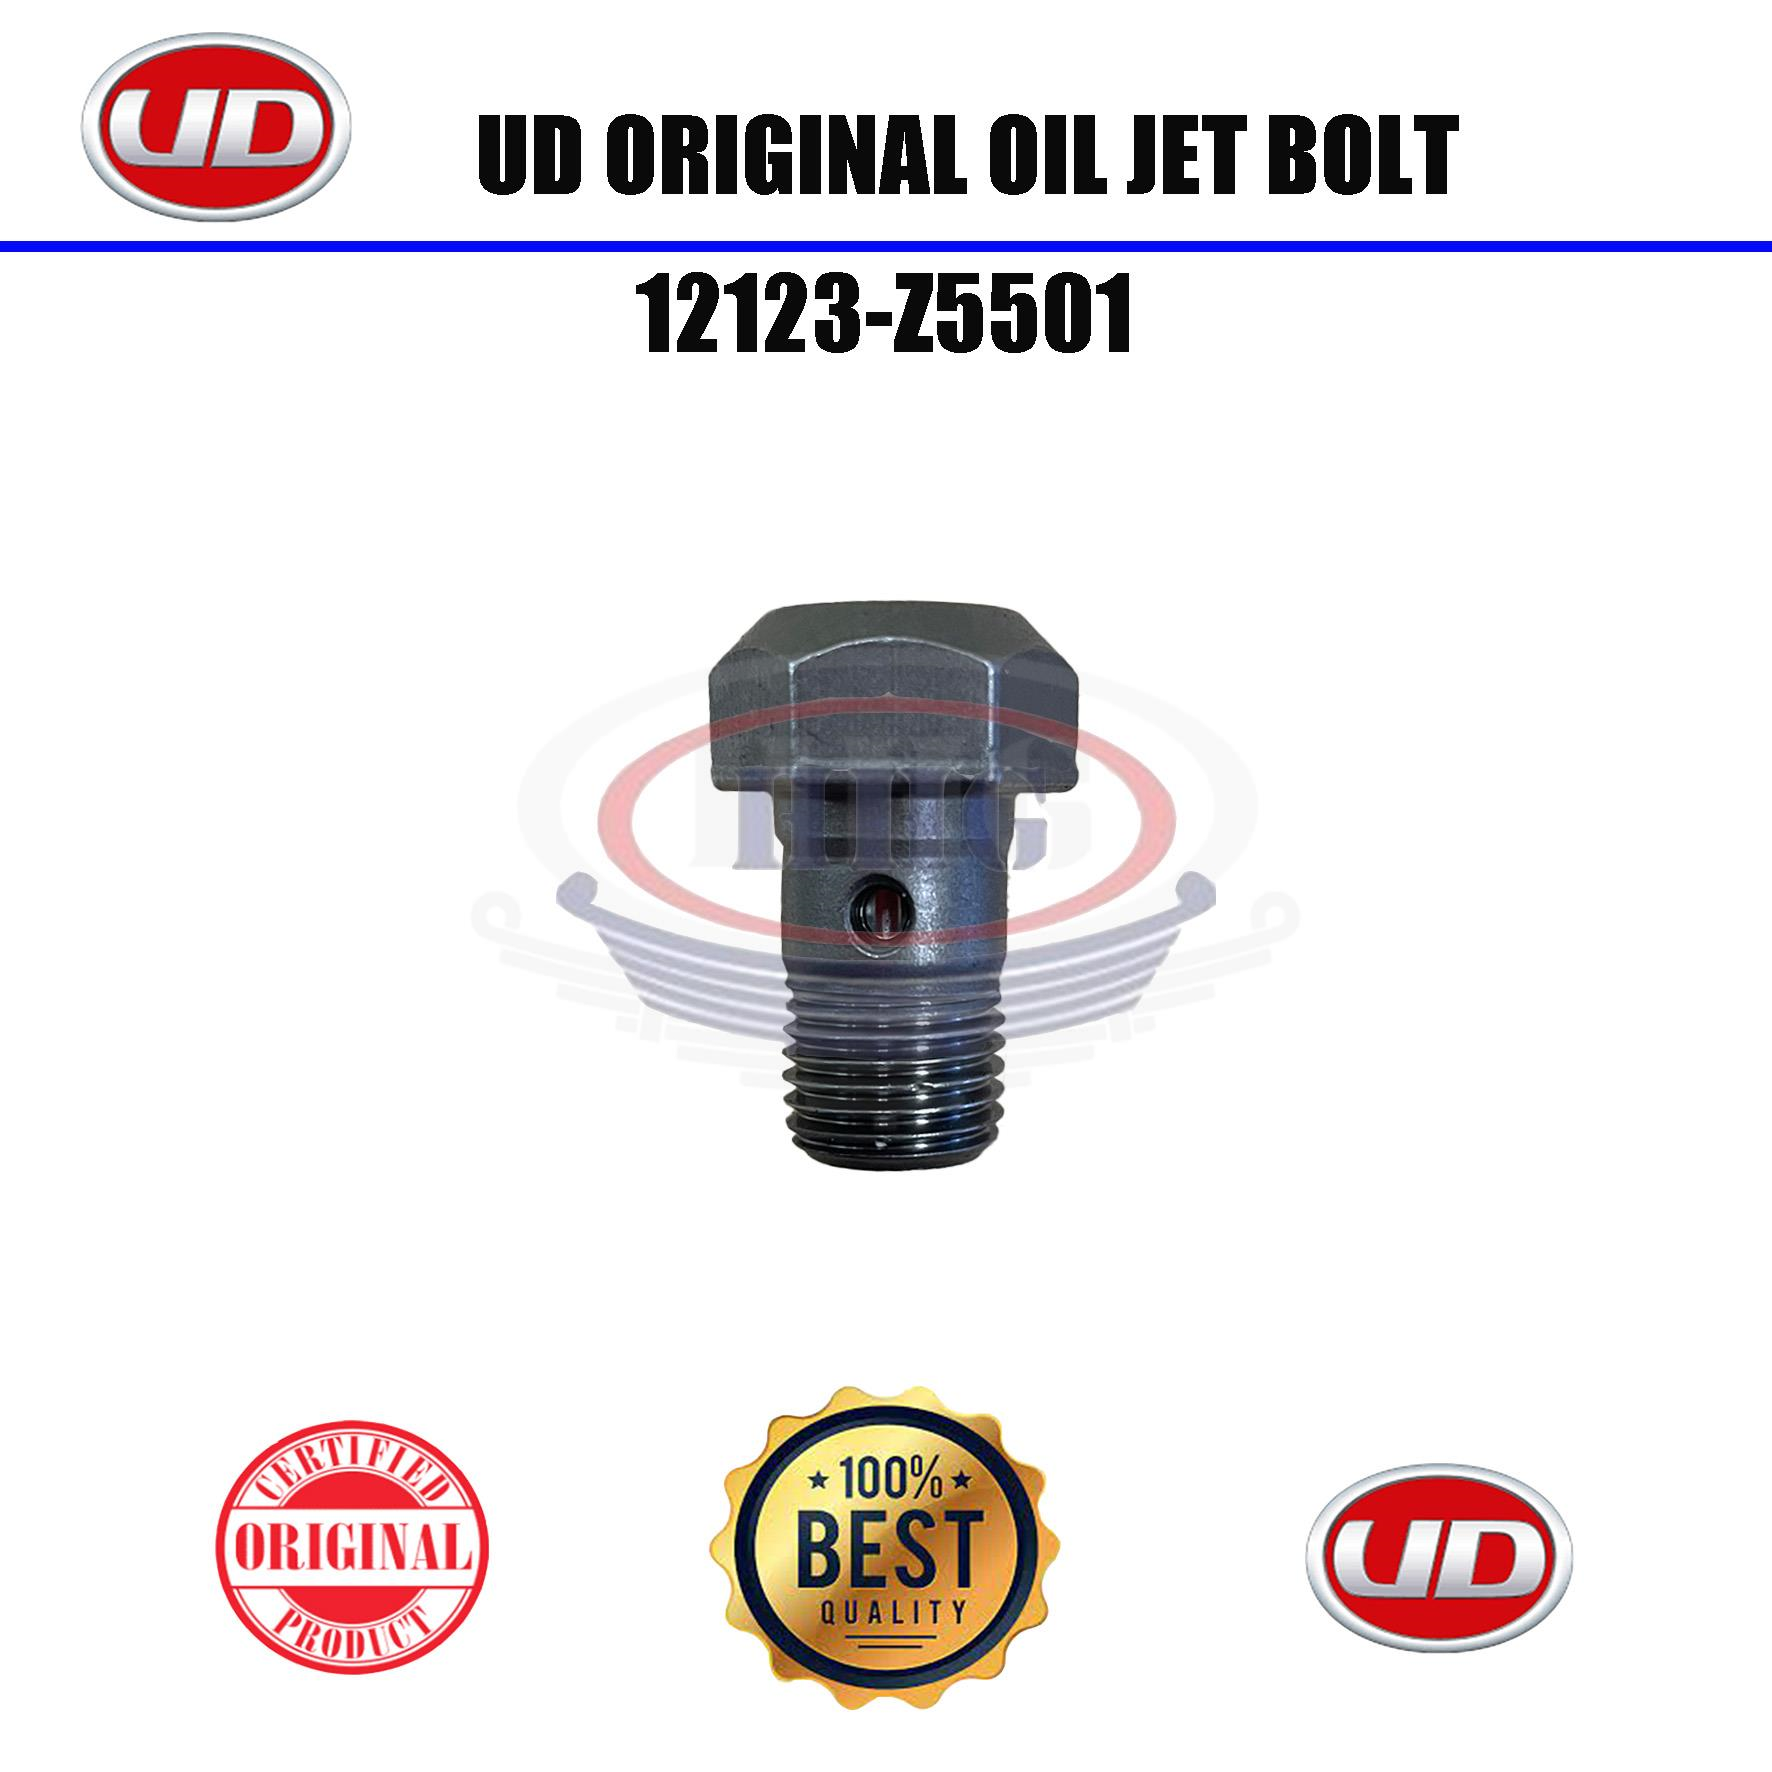 UD Original FE6T NF6 TD42 GE13T Oil Jet Bolt (12123-Z5501)